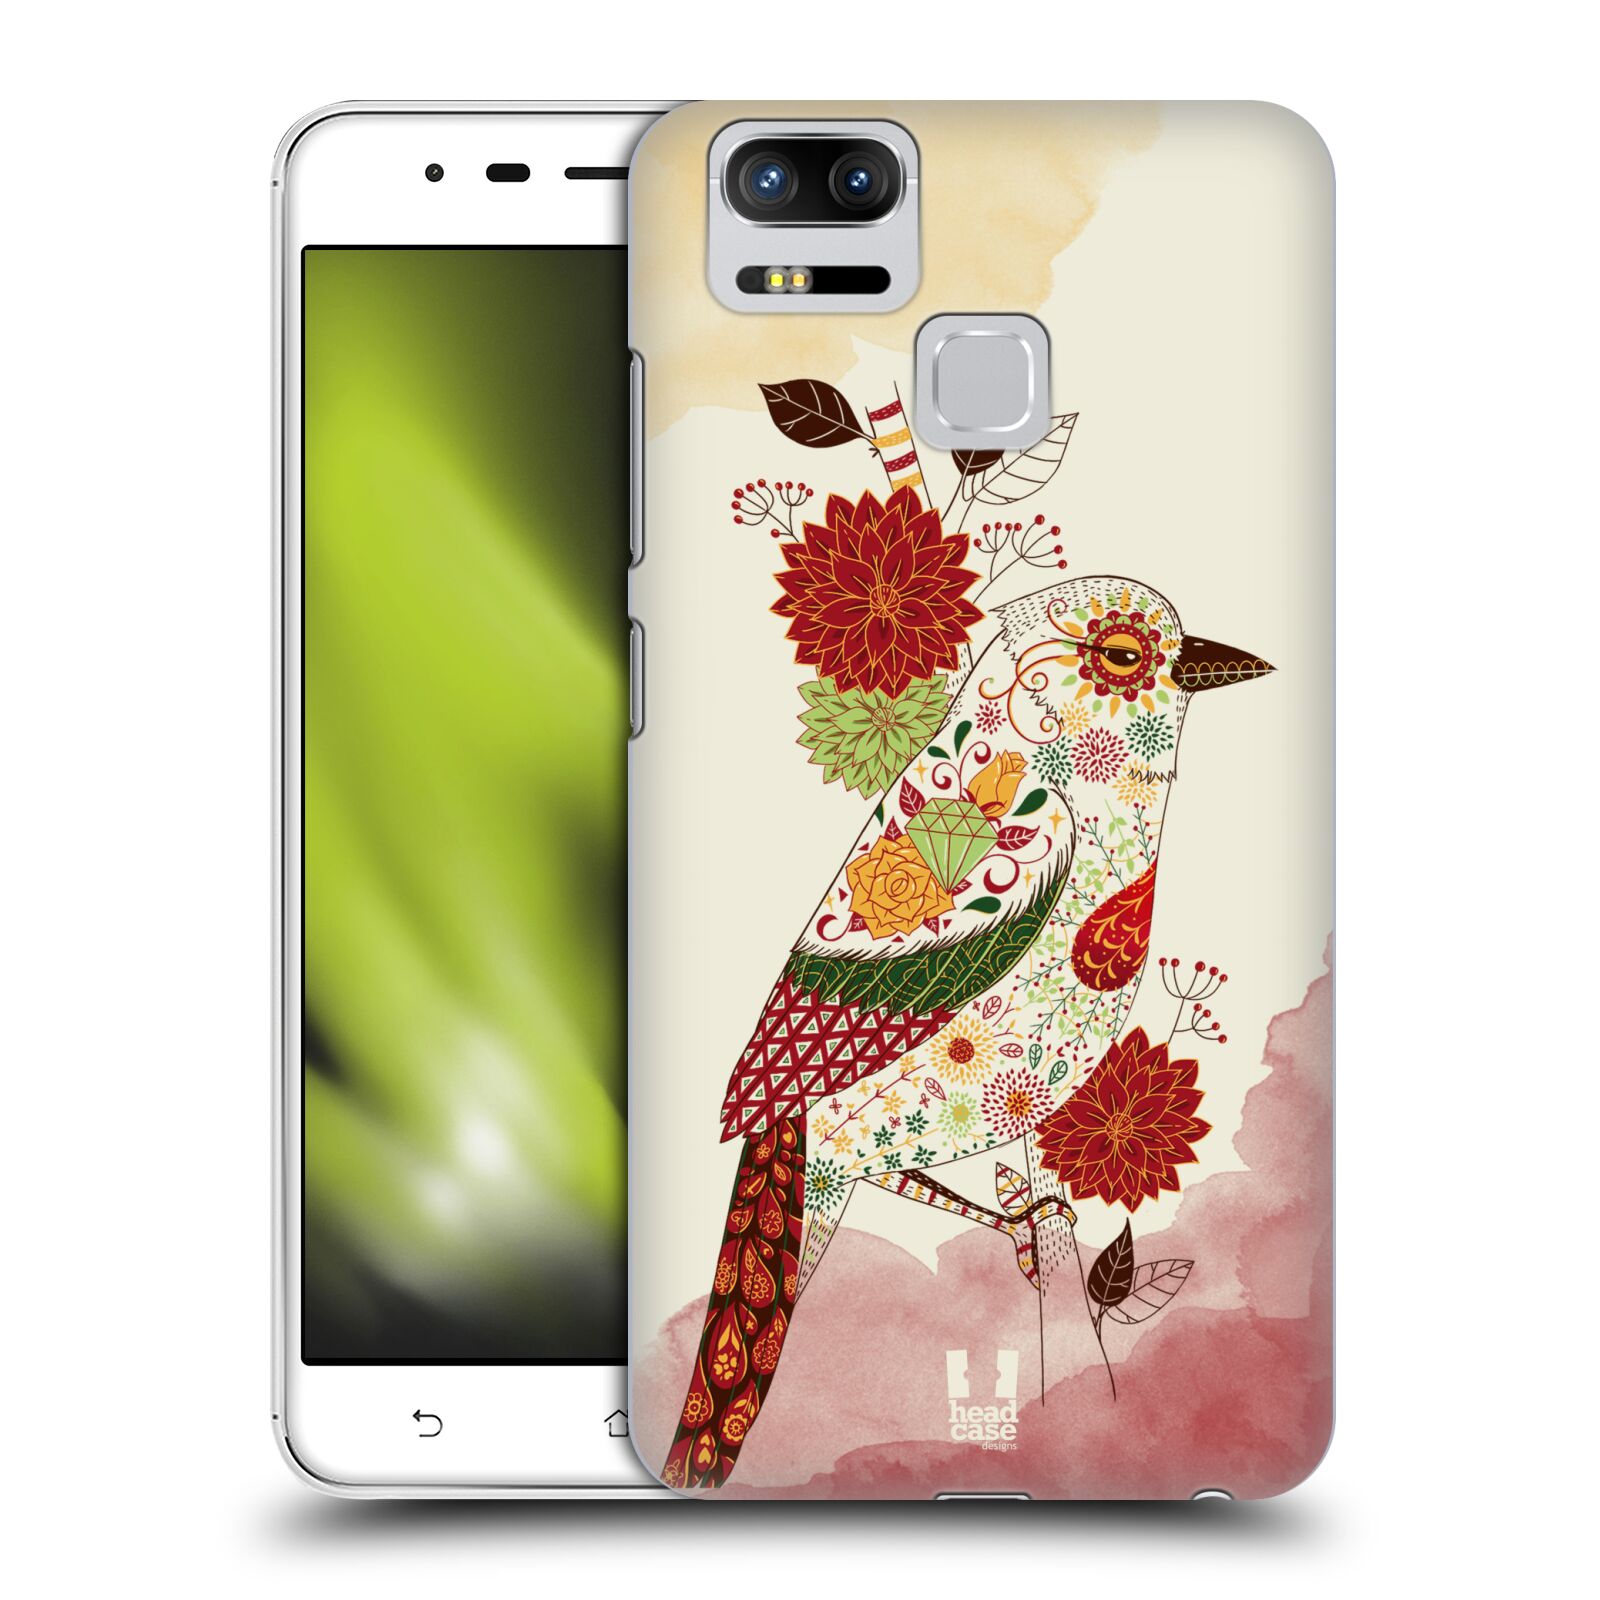 HEAD CASE plastový obal na mobil Asus Zenfone 3 Zoom ZE553KL vzor Květina ptáčci RUDÁ